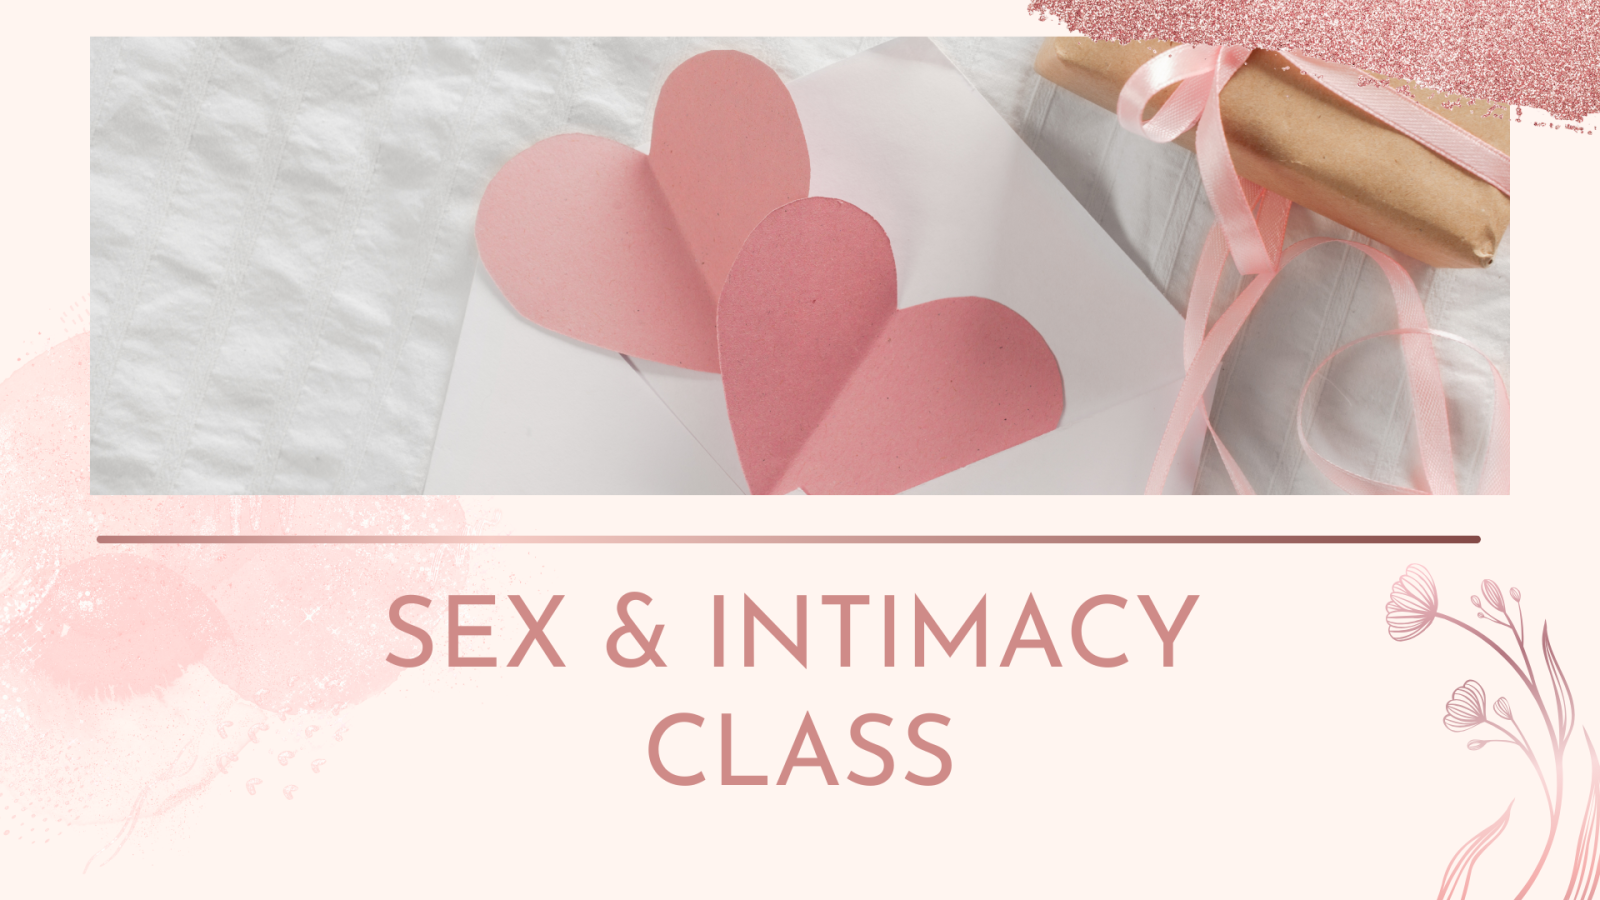 SEX & INTIMACY CLASS